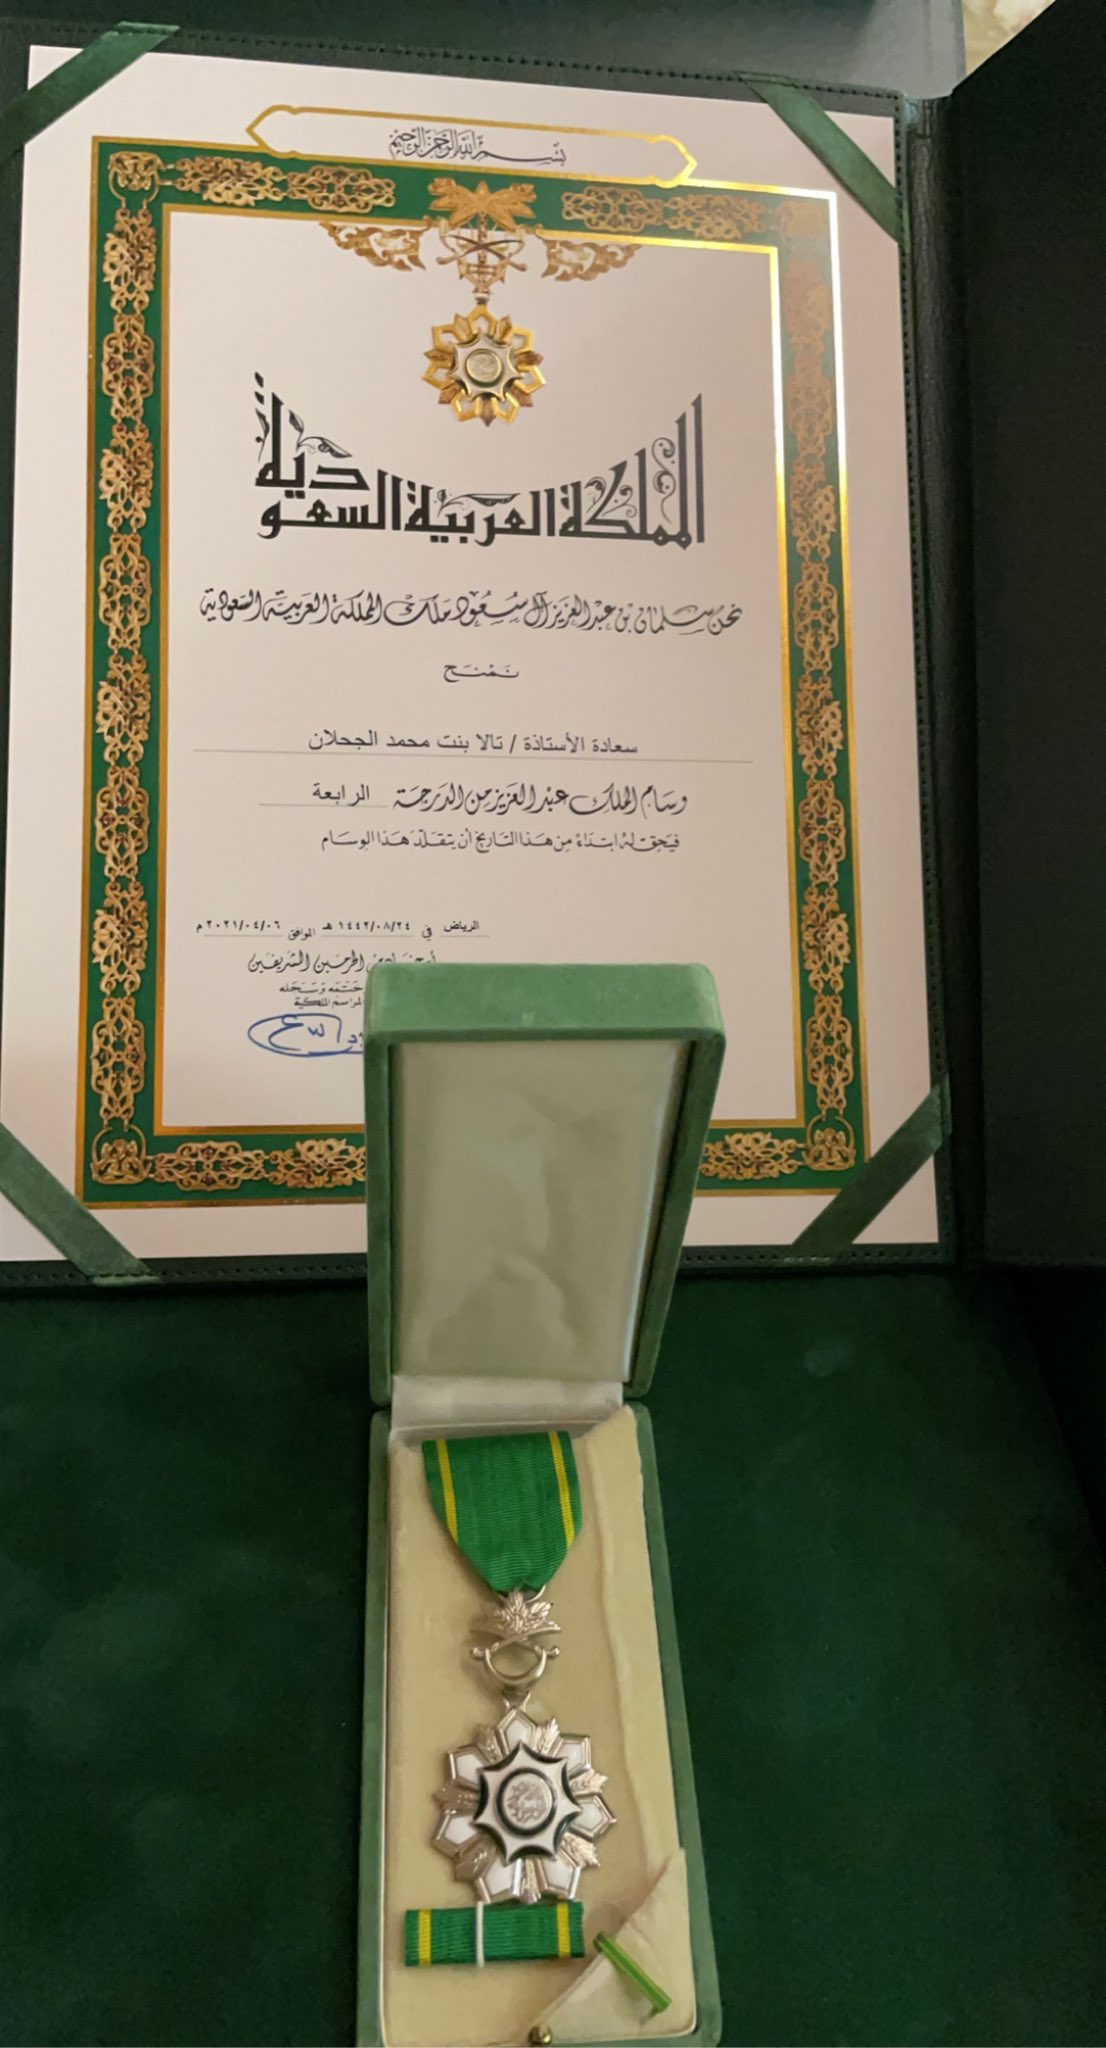 وسام الملك عبدالعزيز الدرجة الرابعه